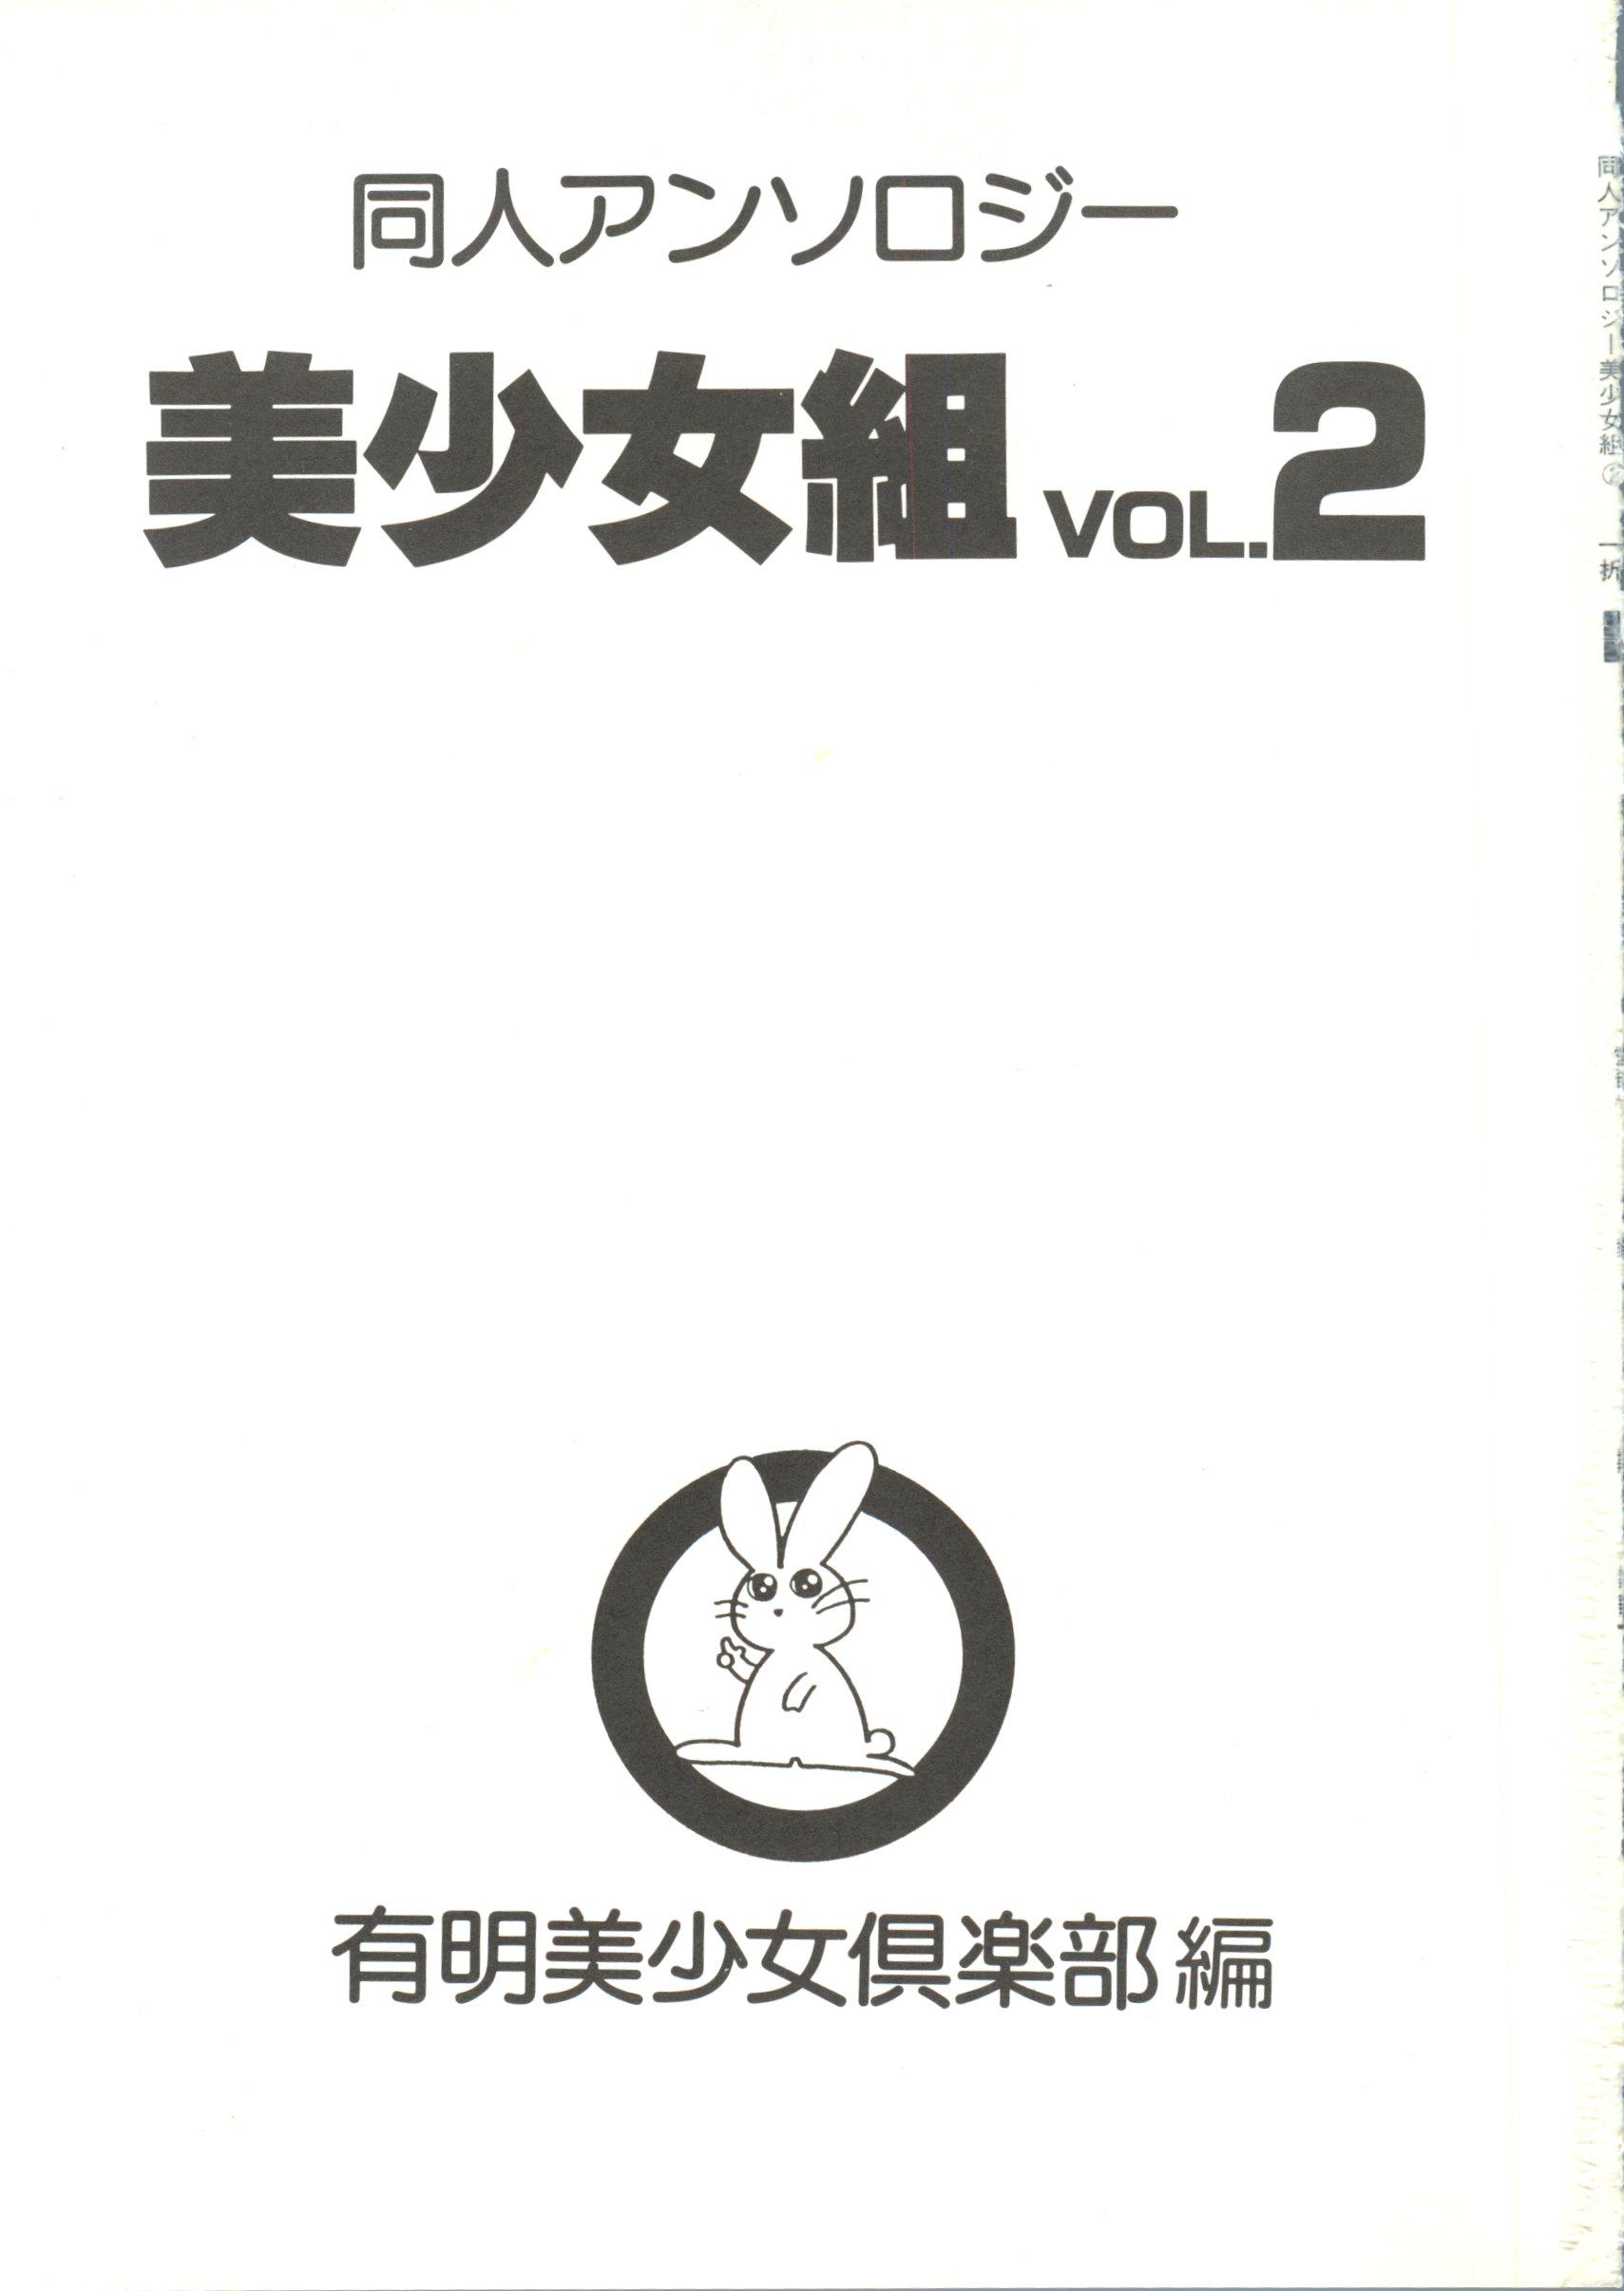 Doujin Anthology Bishoujo Gumi 2 2